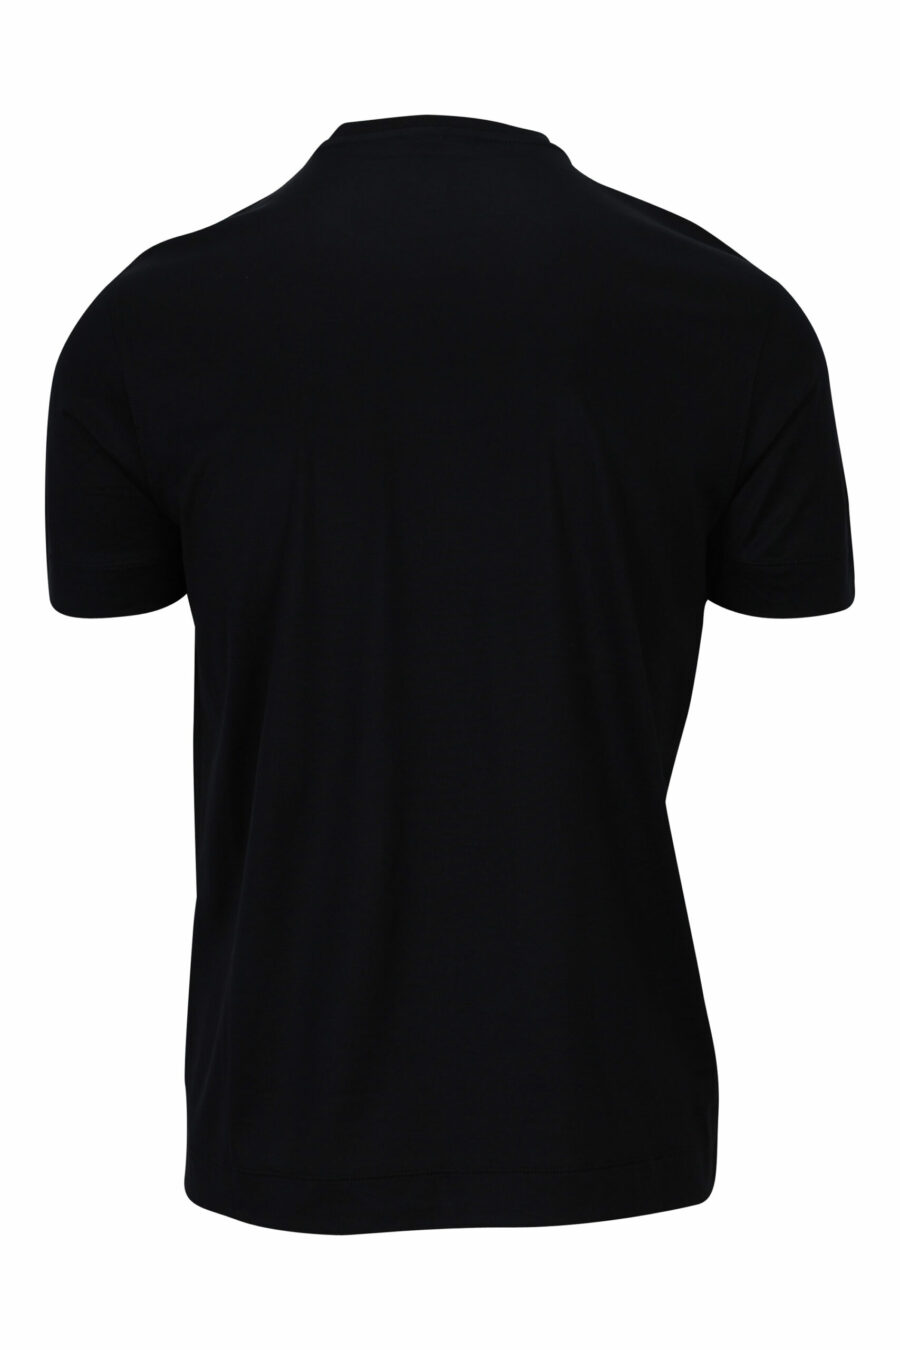 Camiseta negra con maxilogo águila blanca delineada - 8057767554040 1 scaled